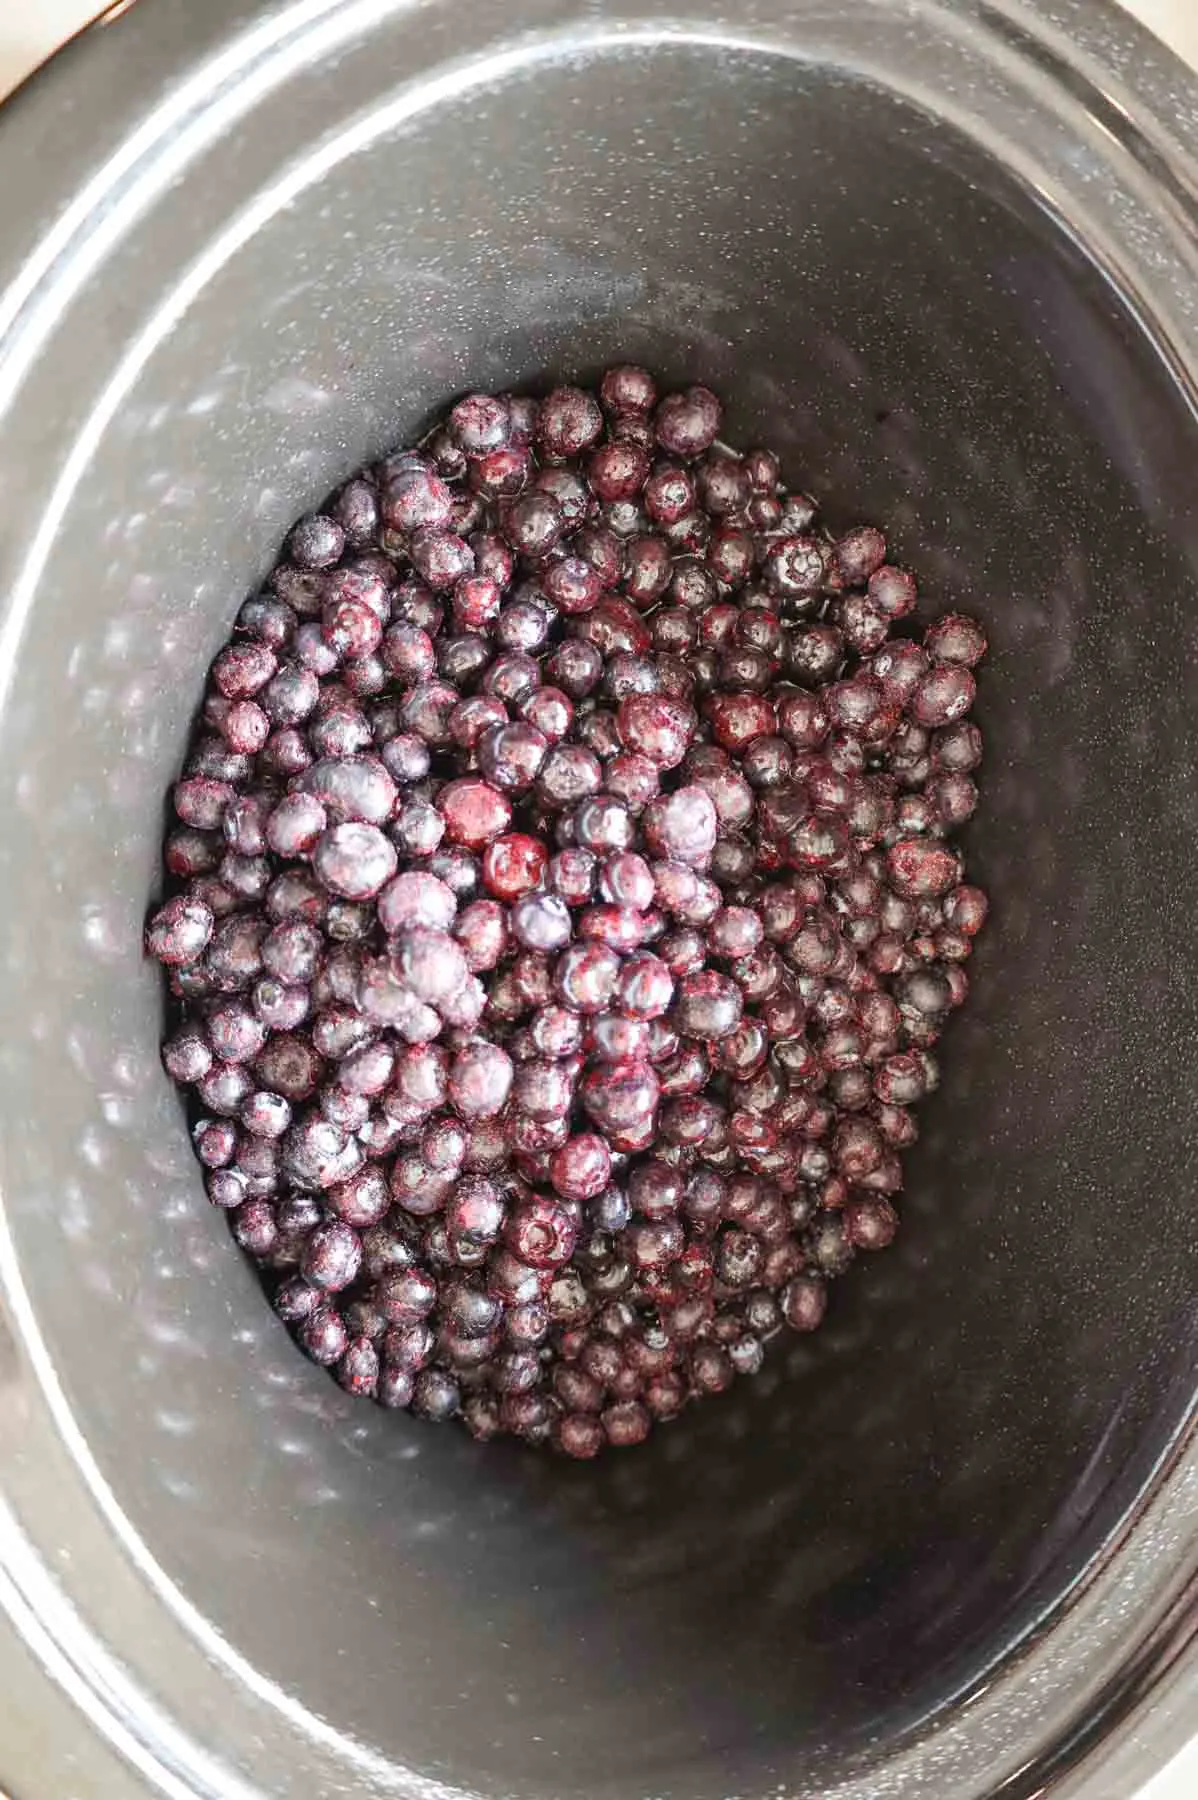 frozen blueberries in a crock pot